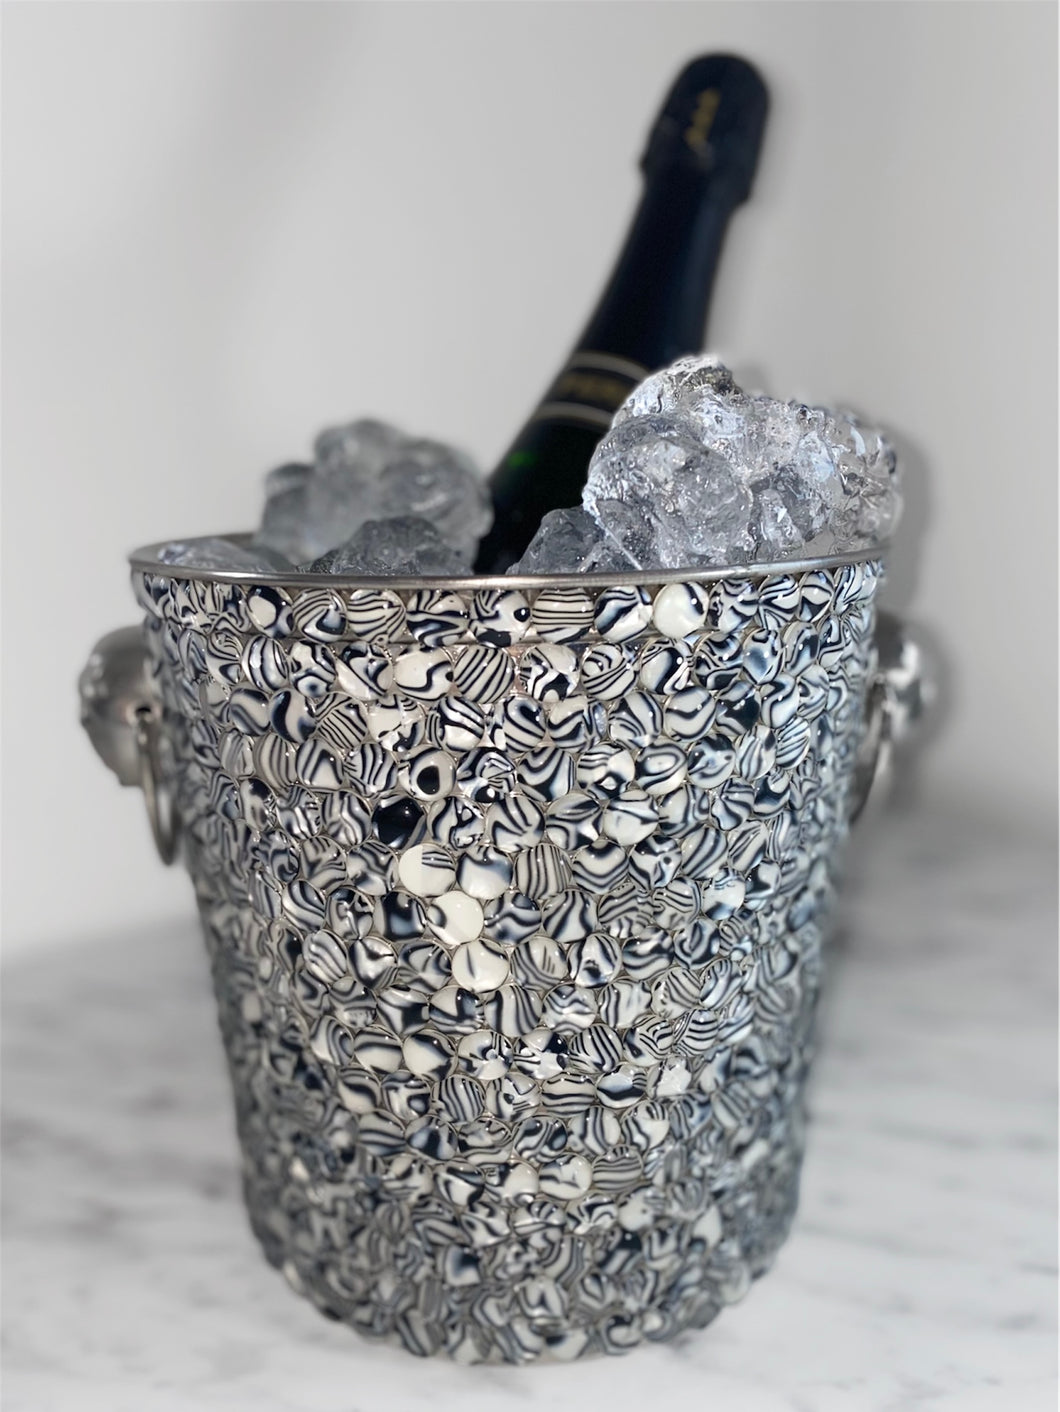 Silber Strass Perlen Kristalle Faux Diamante Diamanten Champagner Eiskübel Getränke Kühler Edelstahl